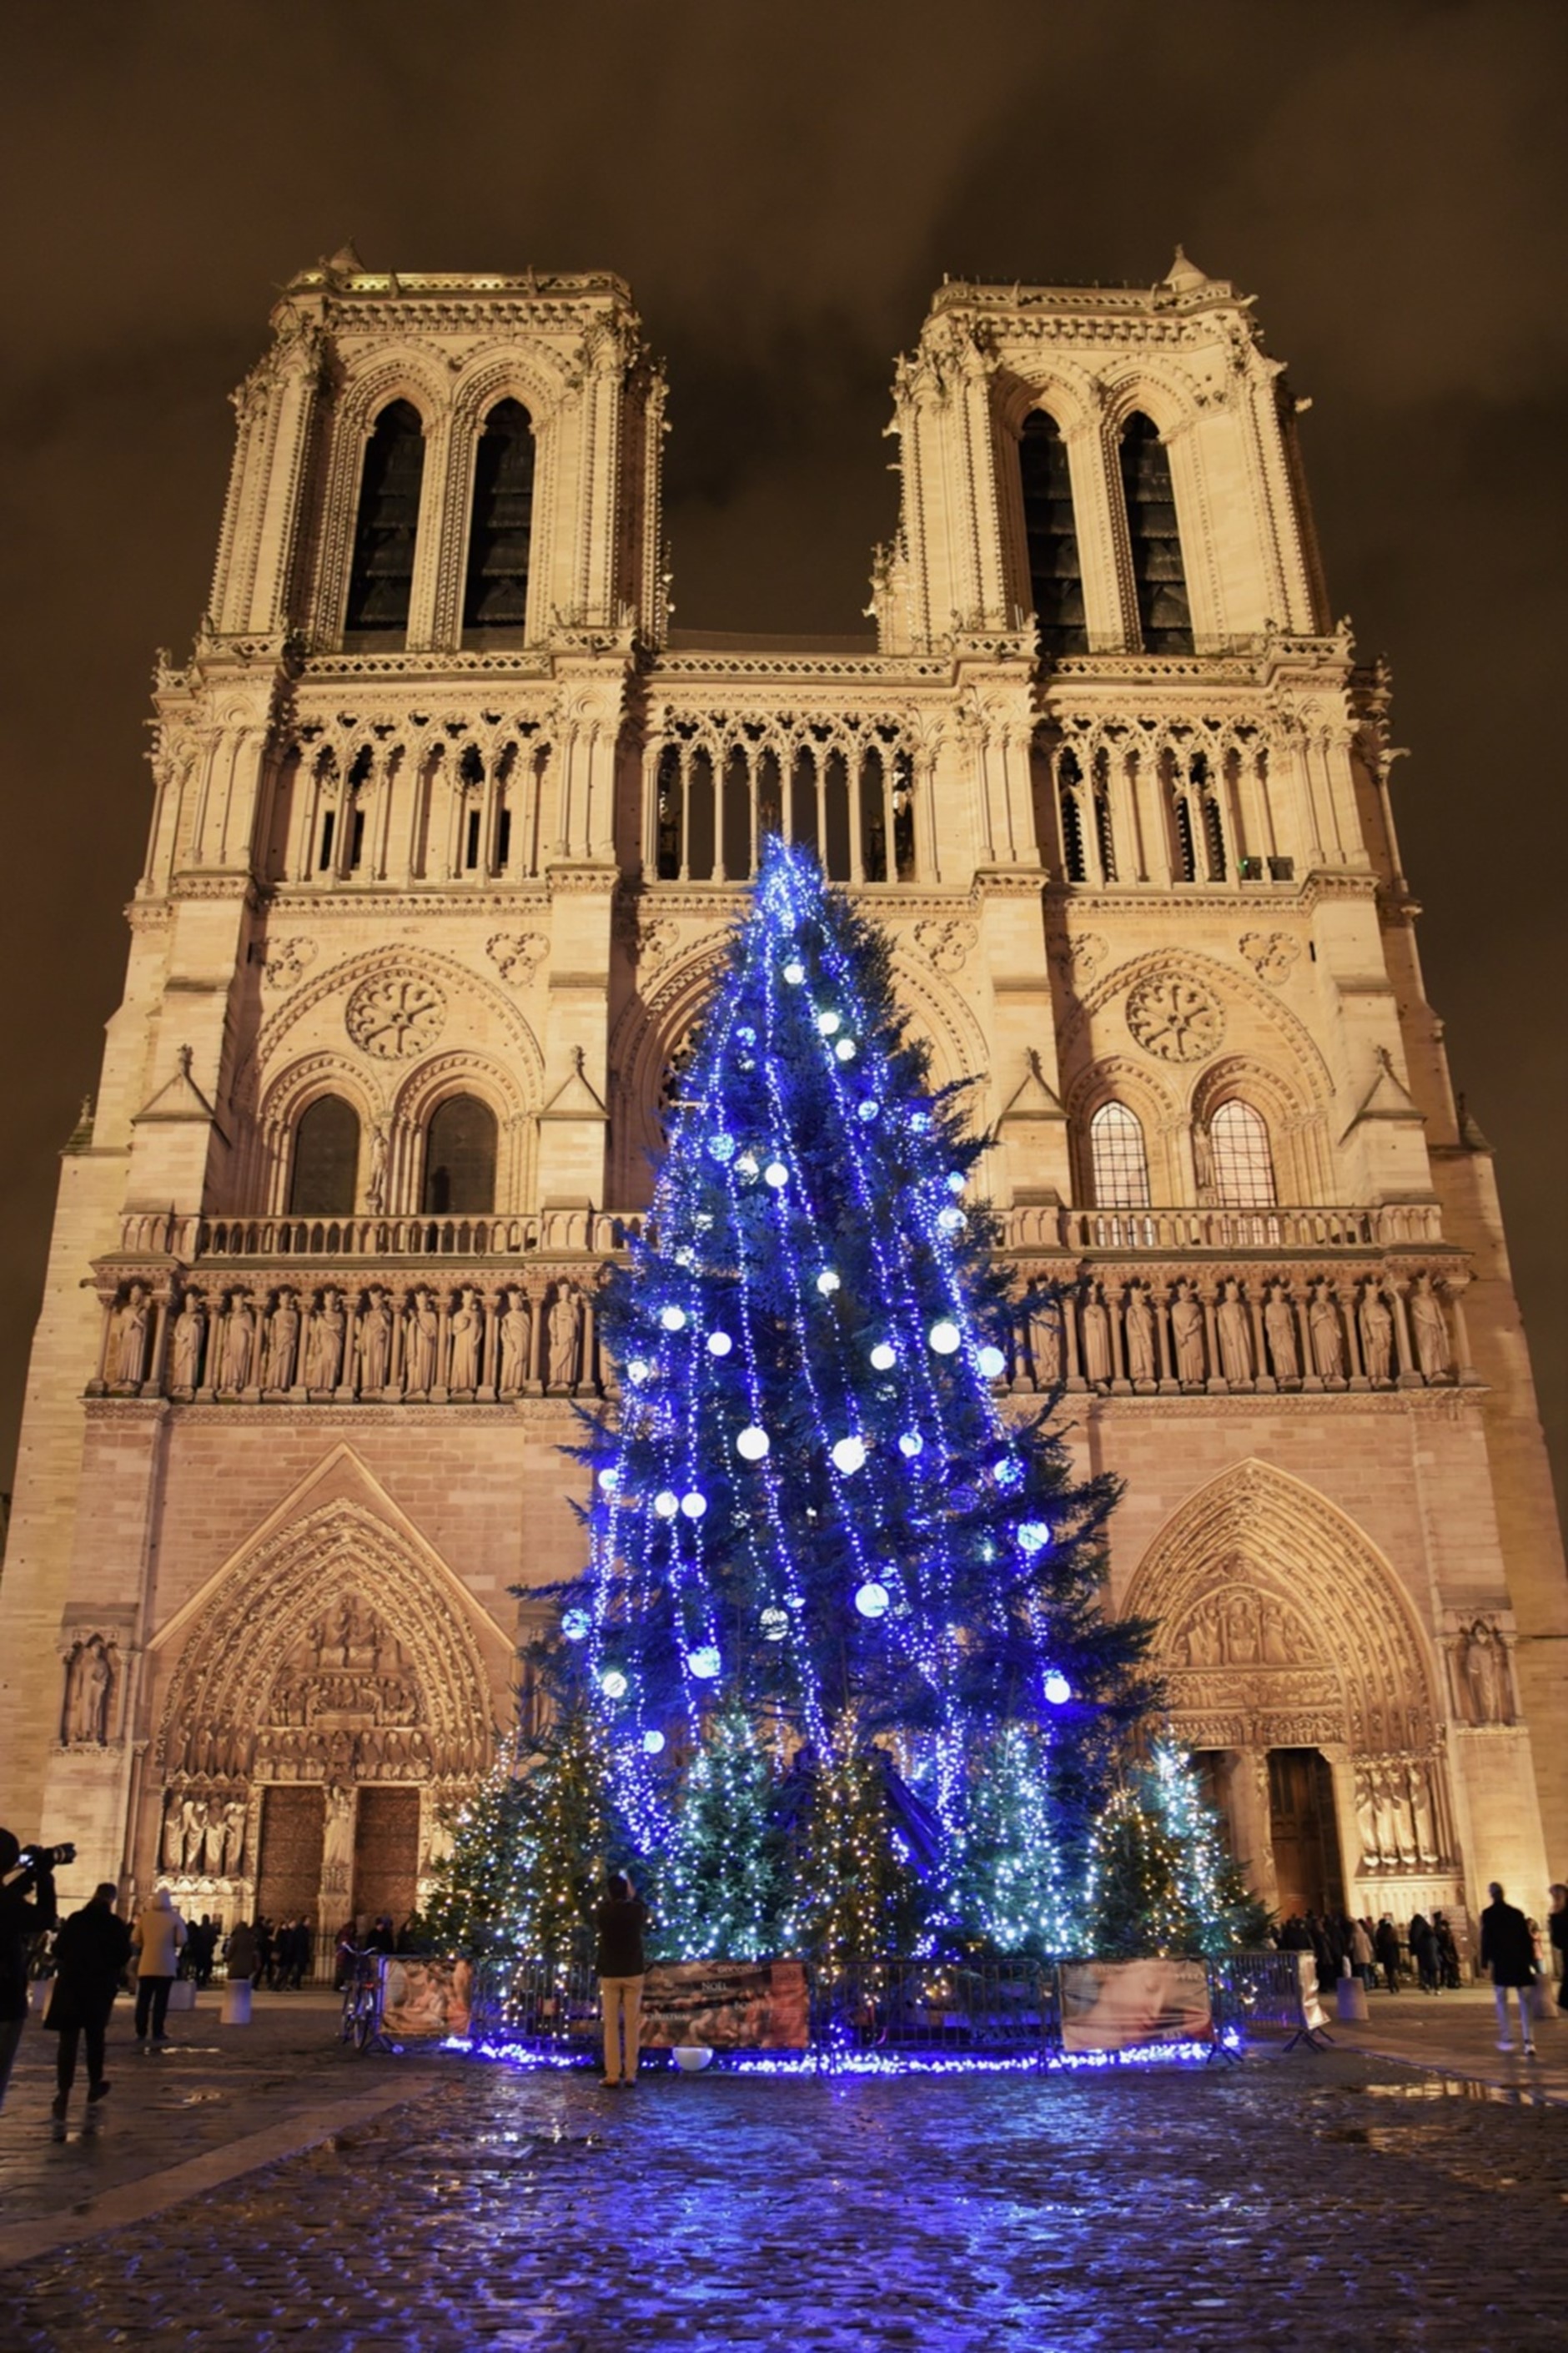 Article Mon-Bucheron.com : Pour un Noël parisien en grandes pompes, faites-vous livrer votre sapin